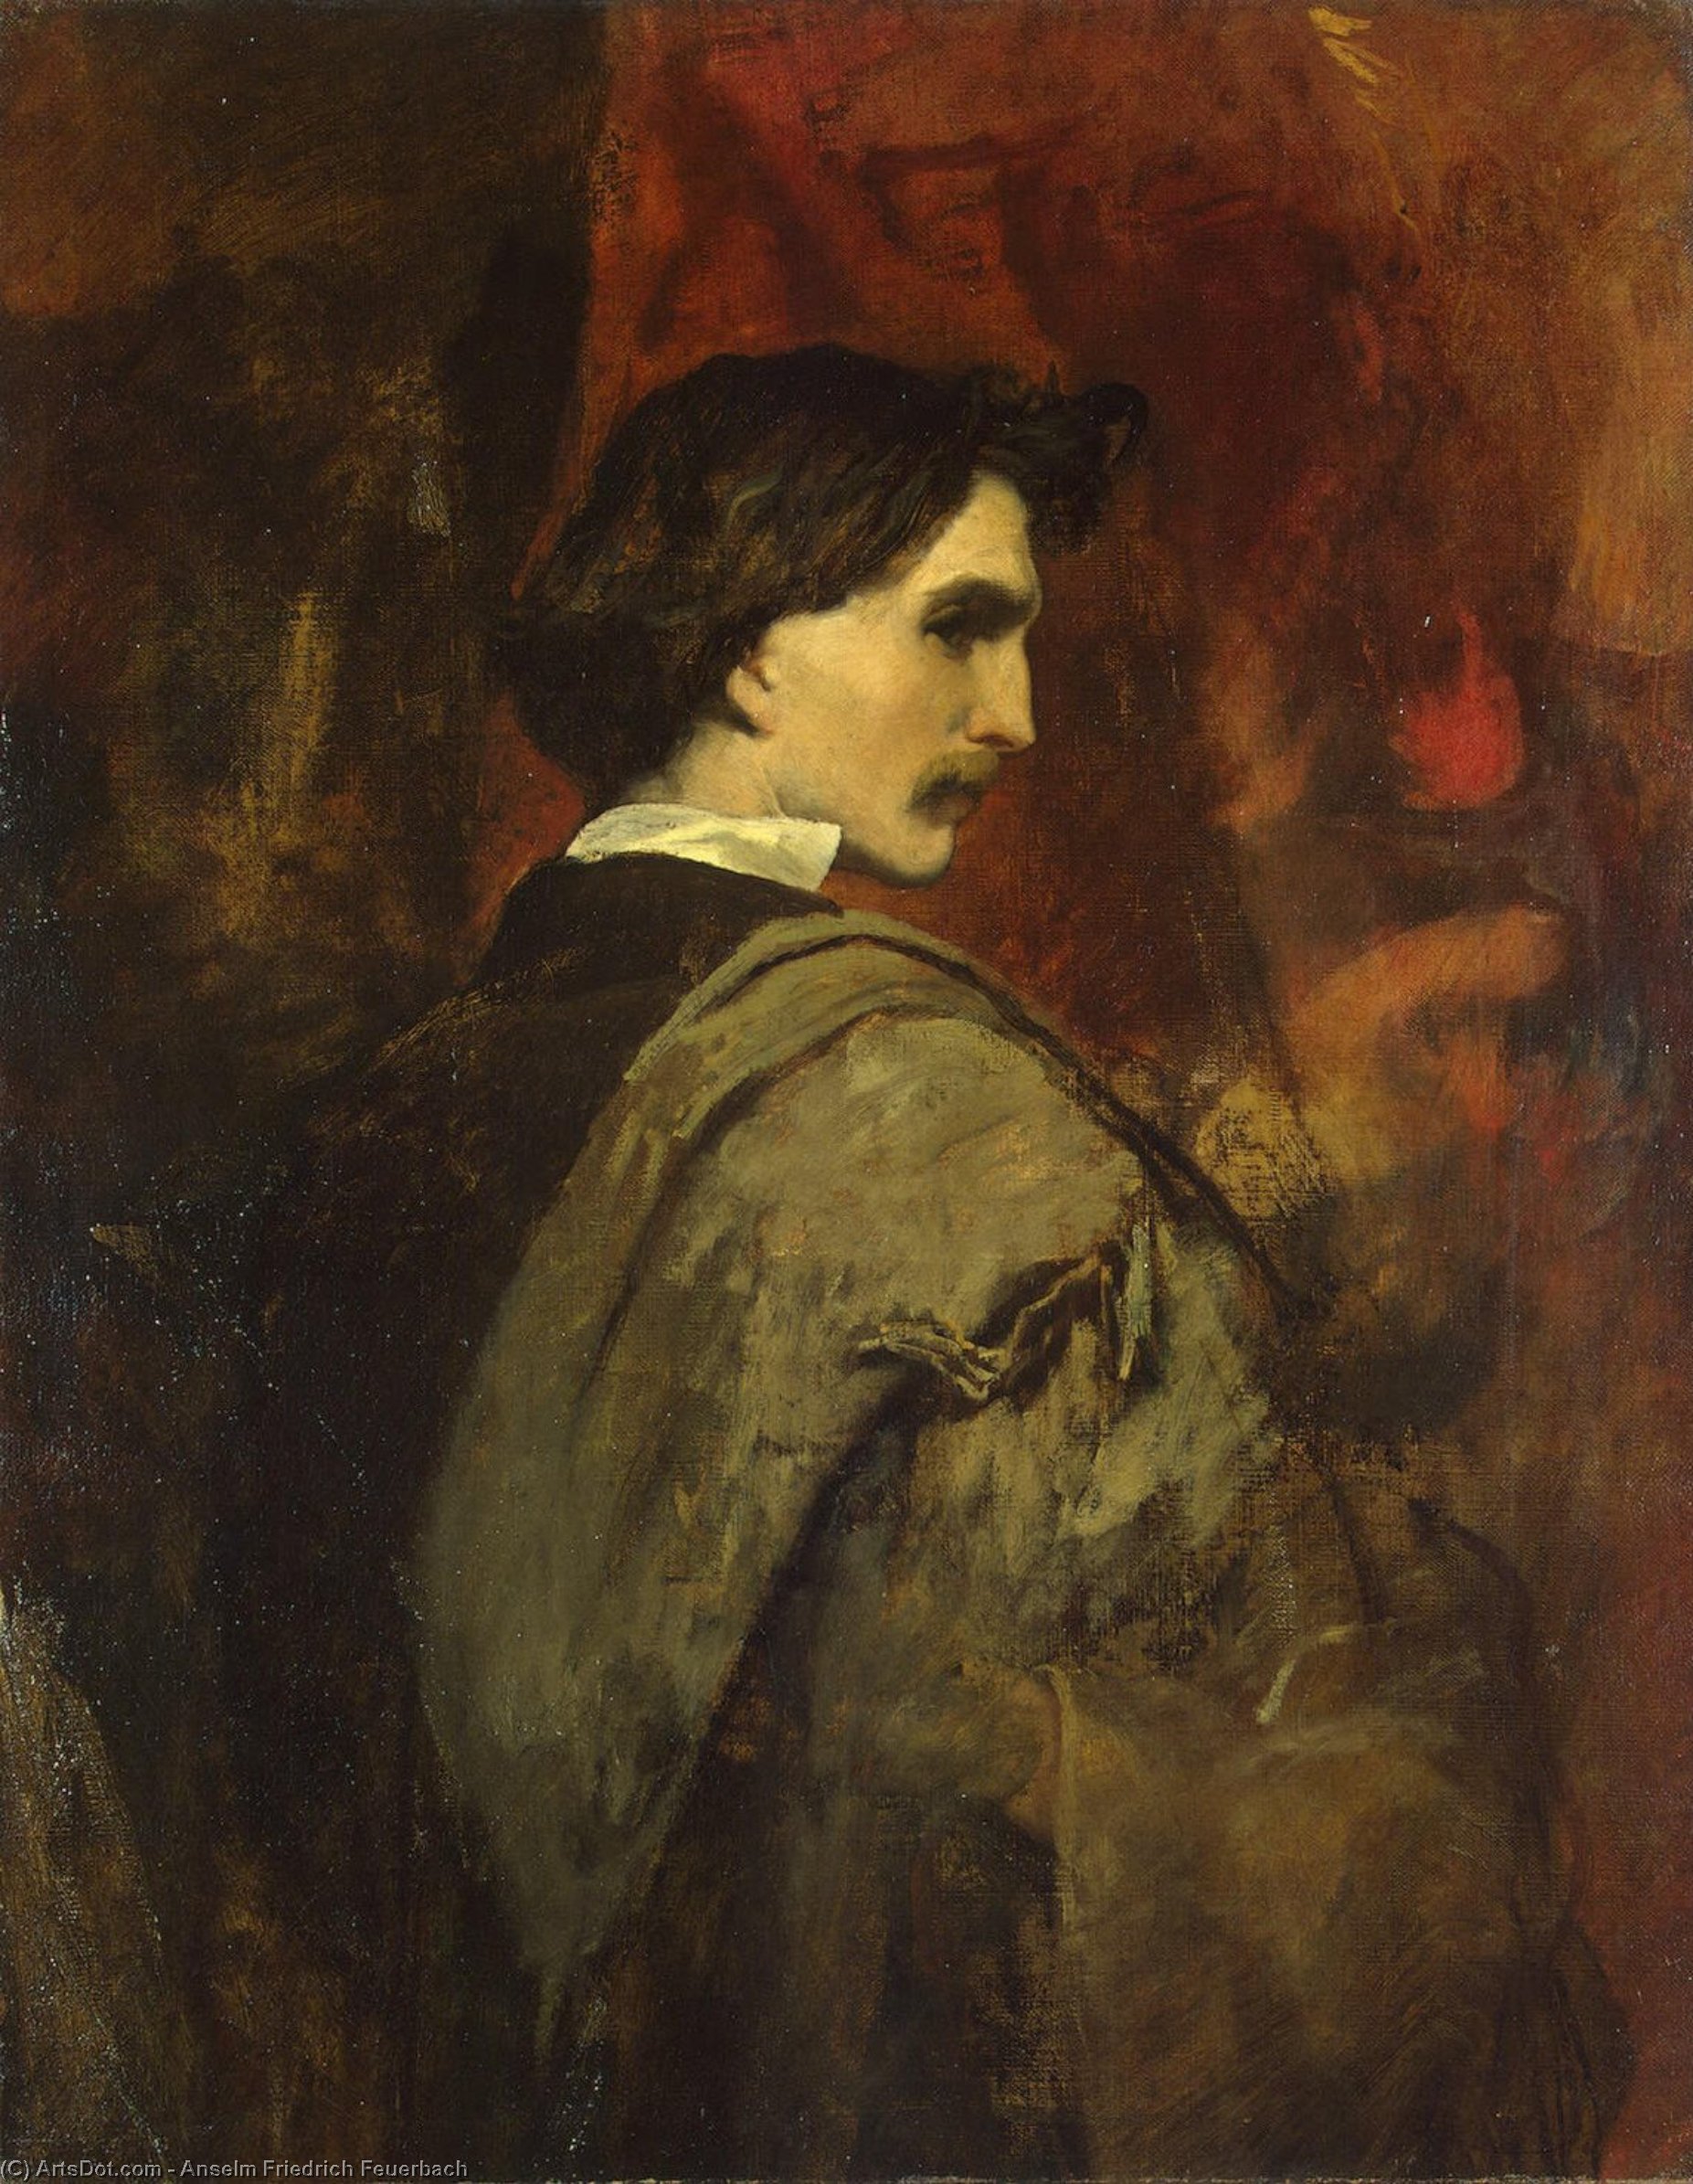 WikiOO.org - Encyclopedia of Fine Arts - Lukisan, Artwork Anselm Friedrich Feuerbach - Self-Portrait